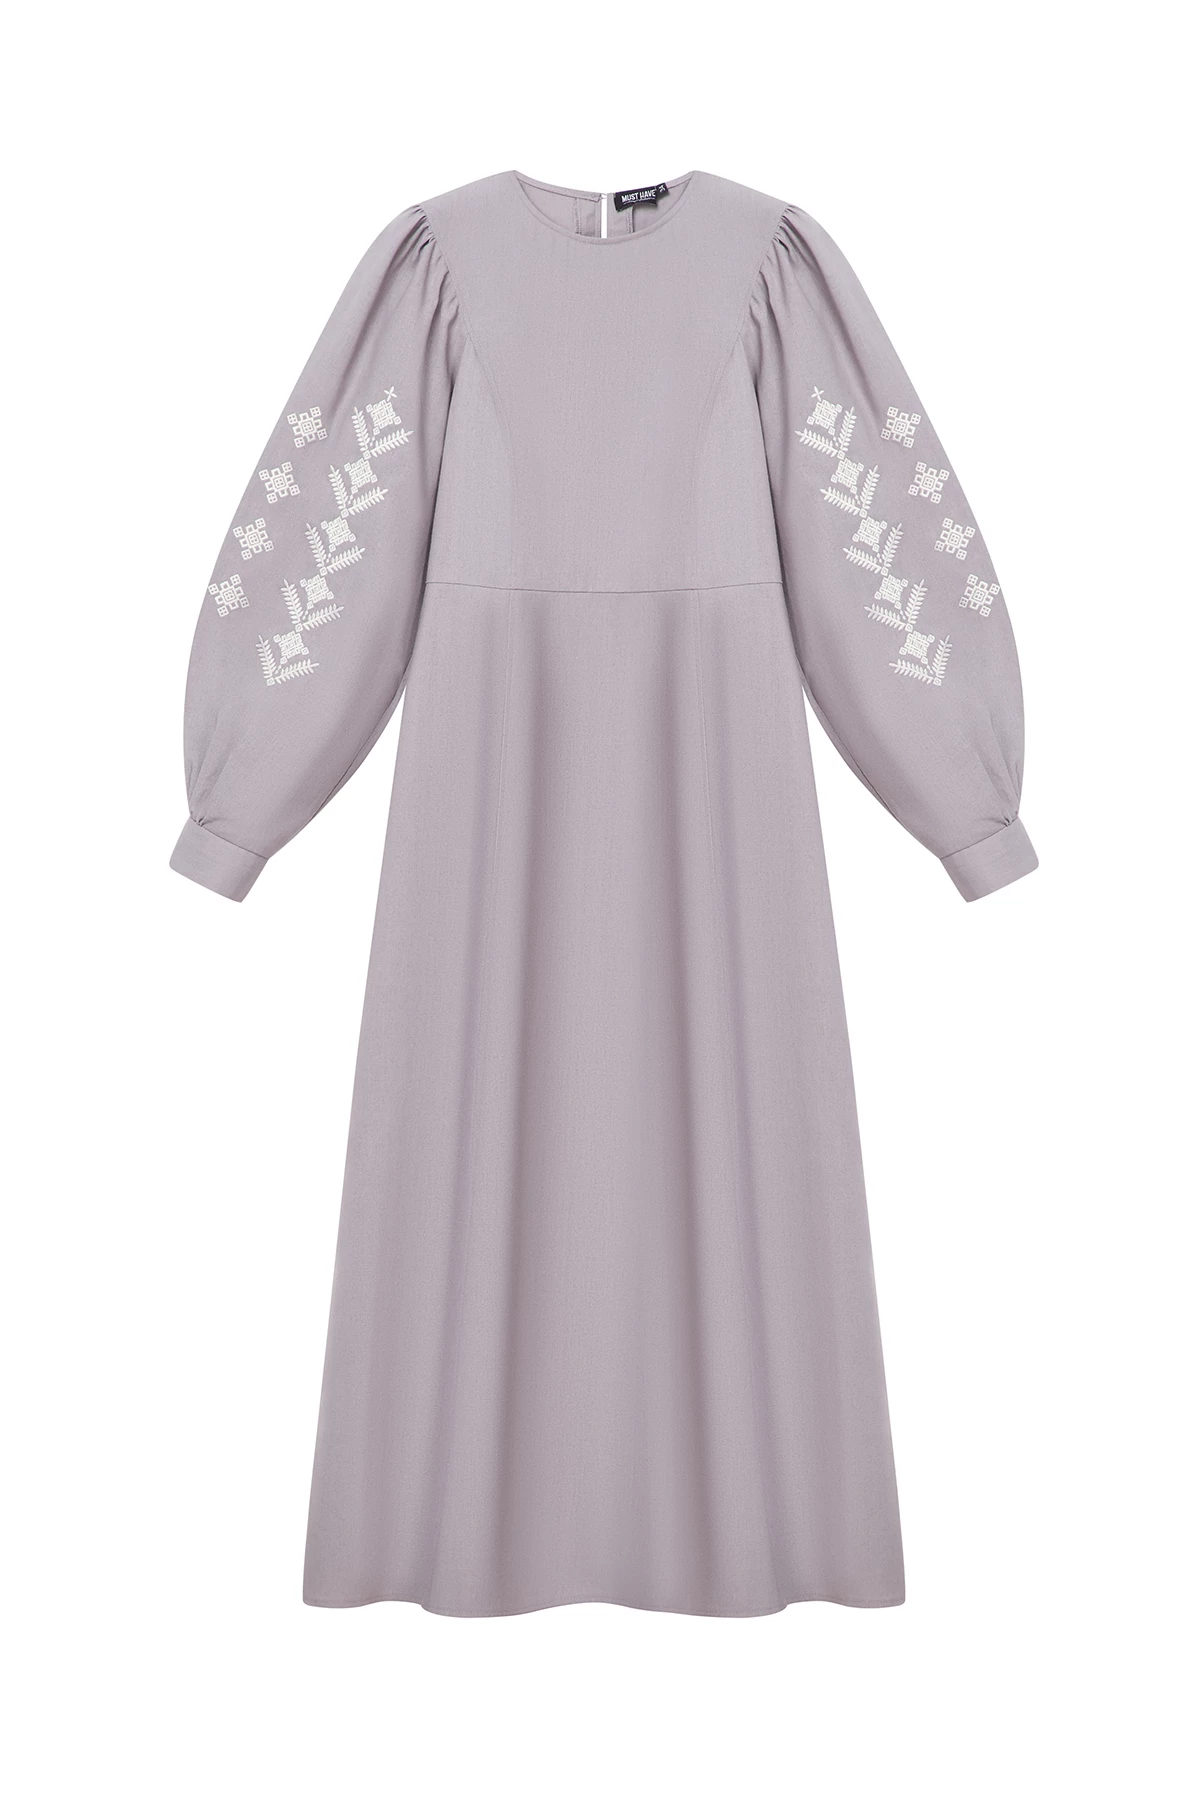 Сіра вишита сукня в орнамент ромби з льоном, фото 7